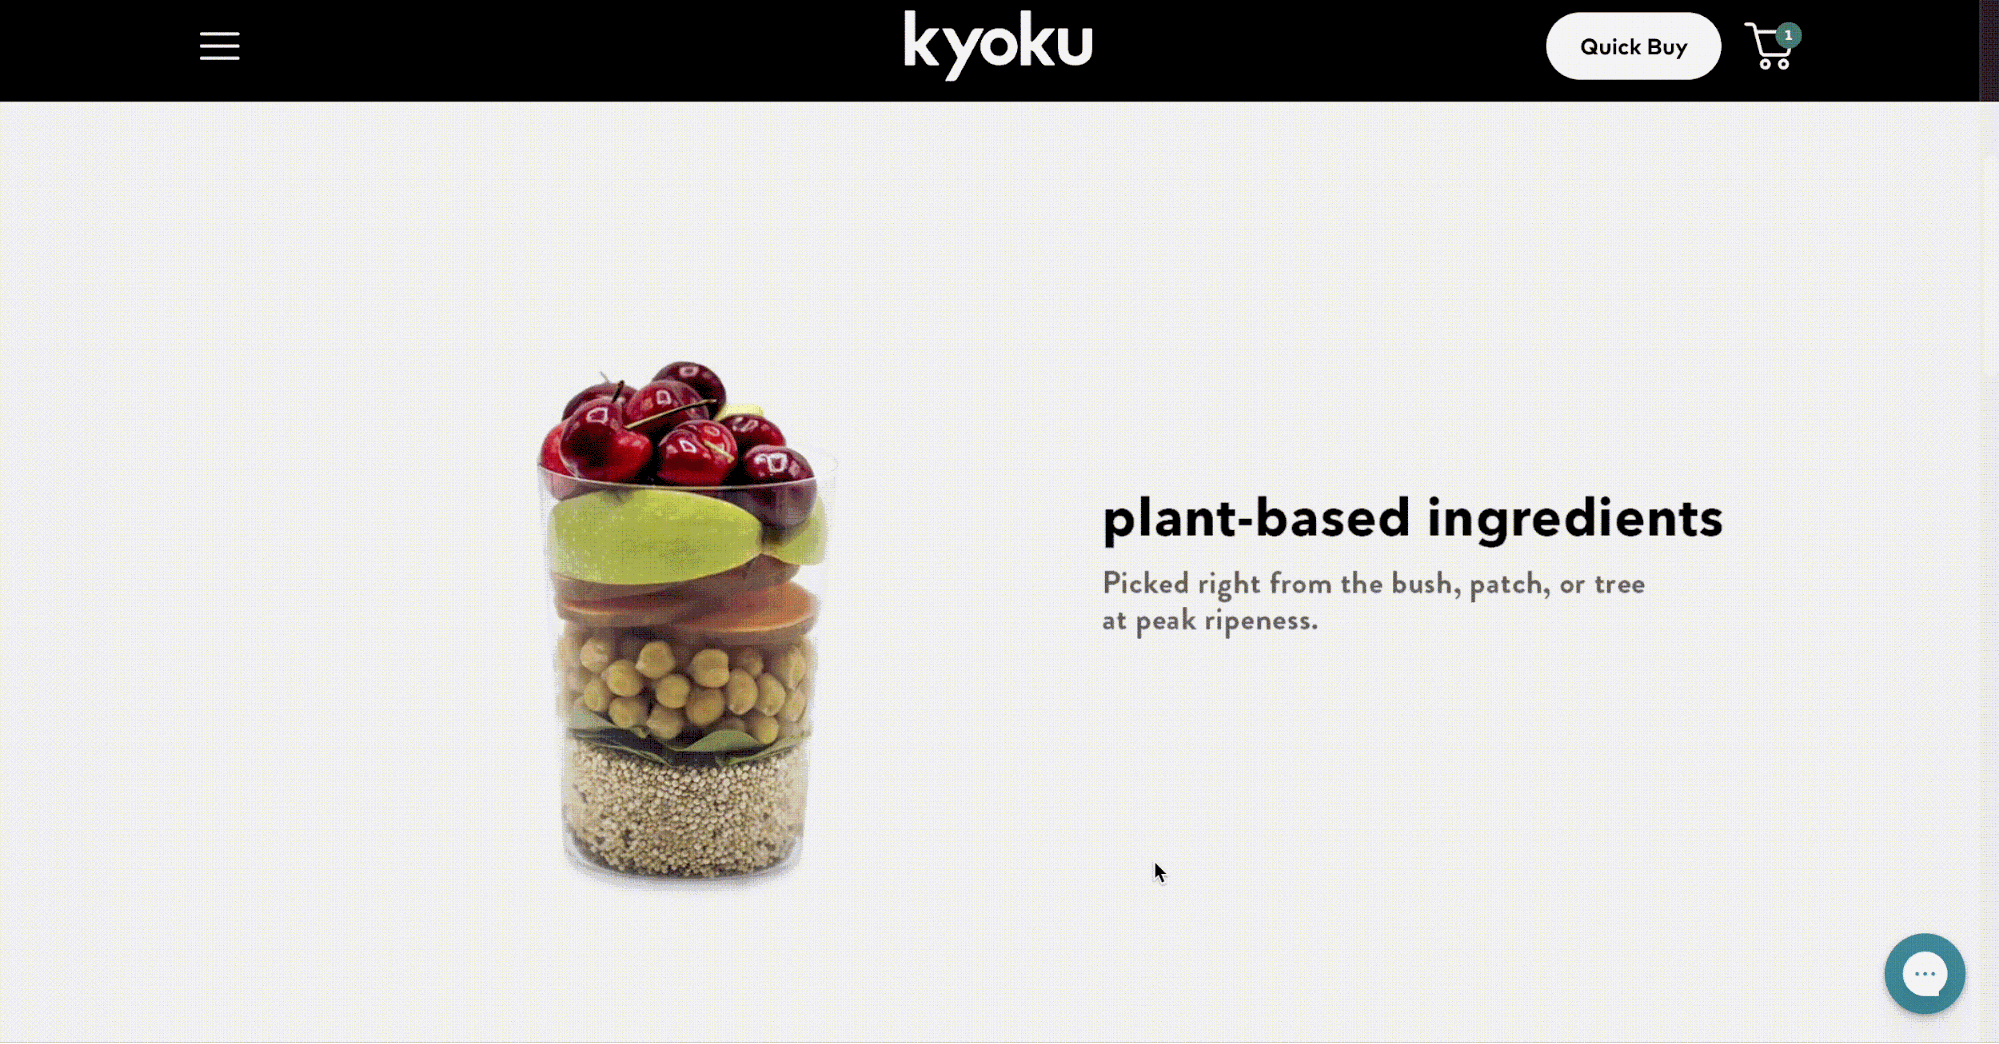 Kyoku.com